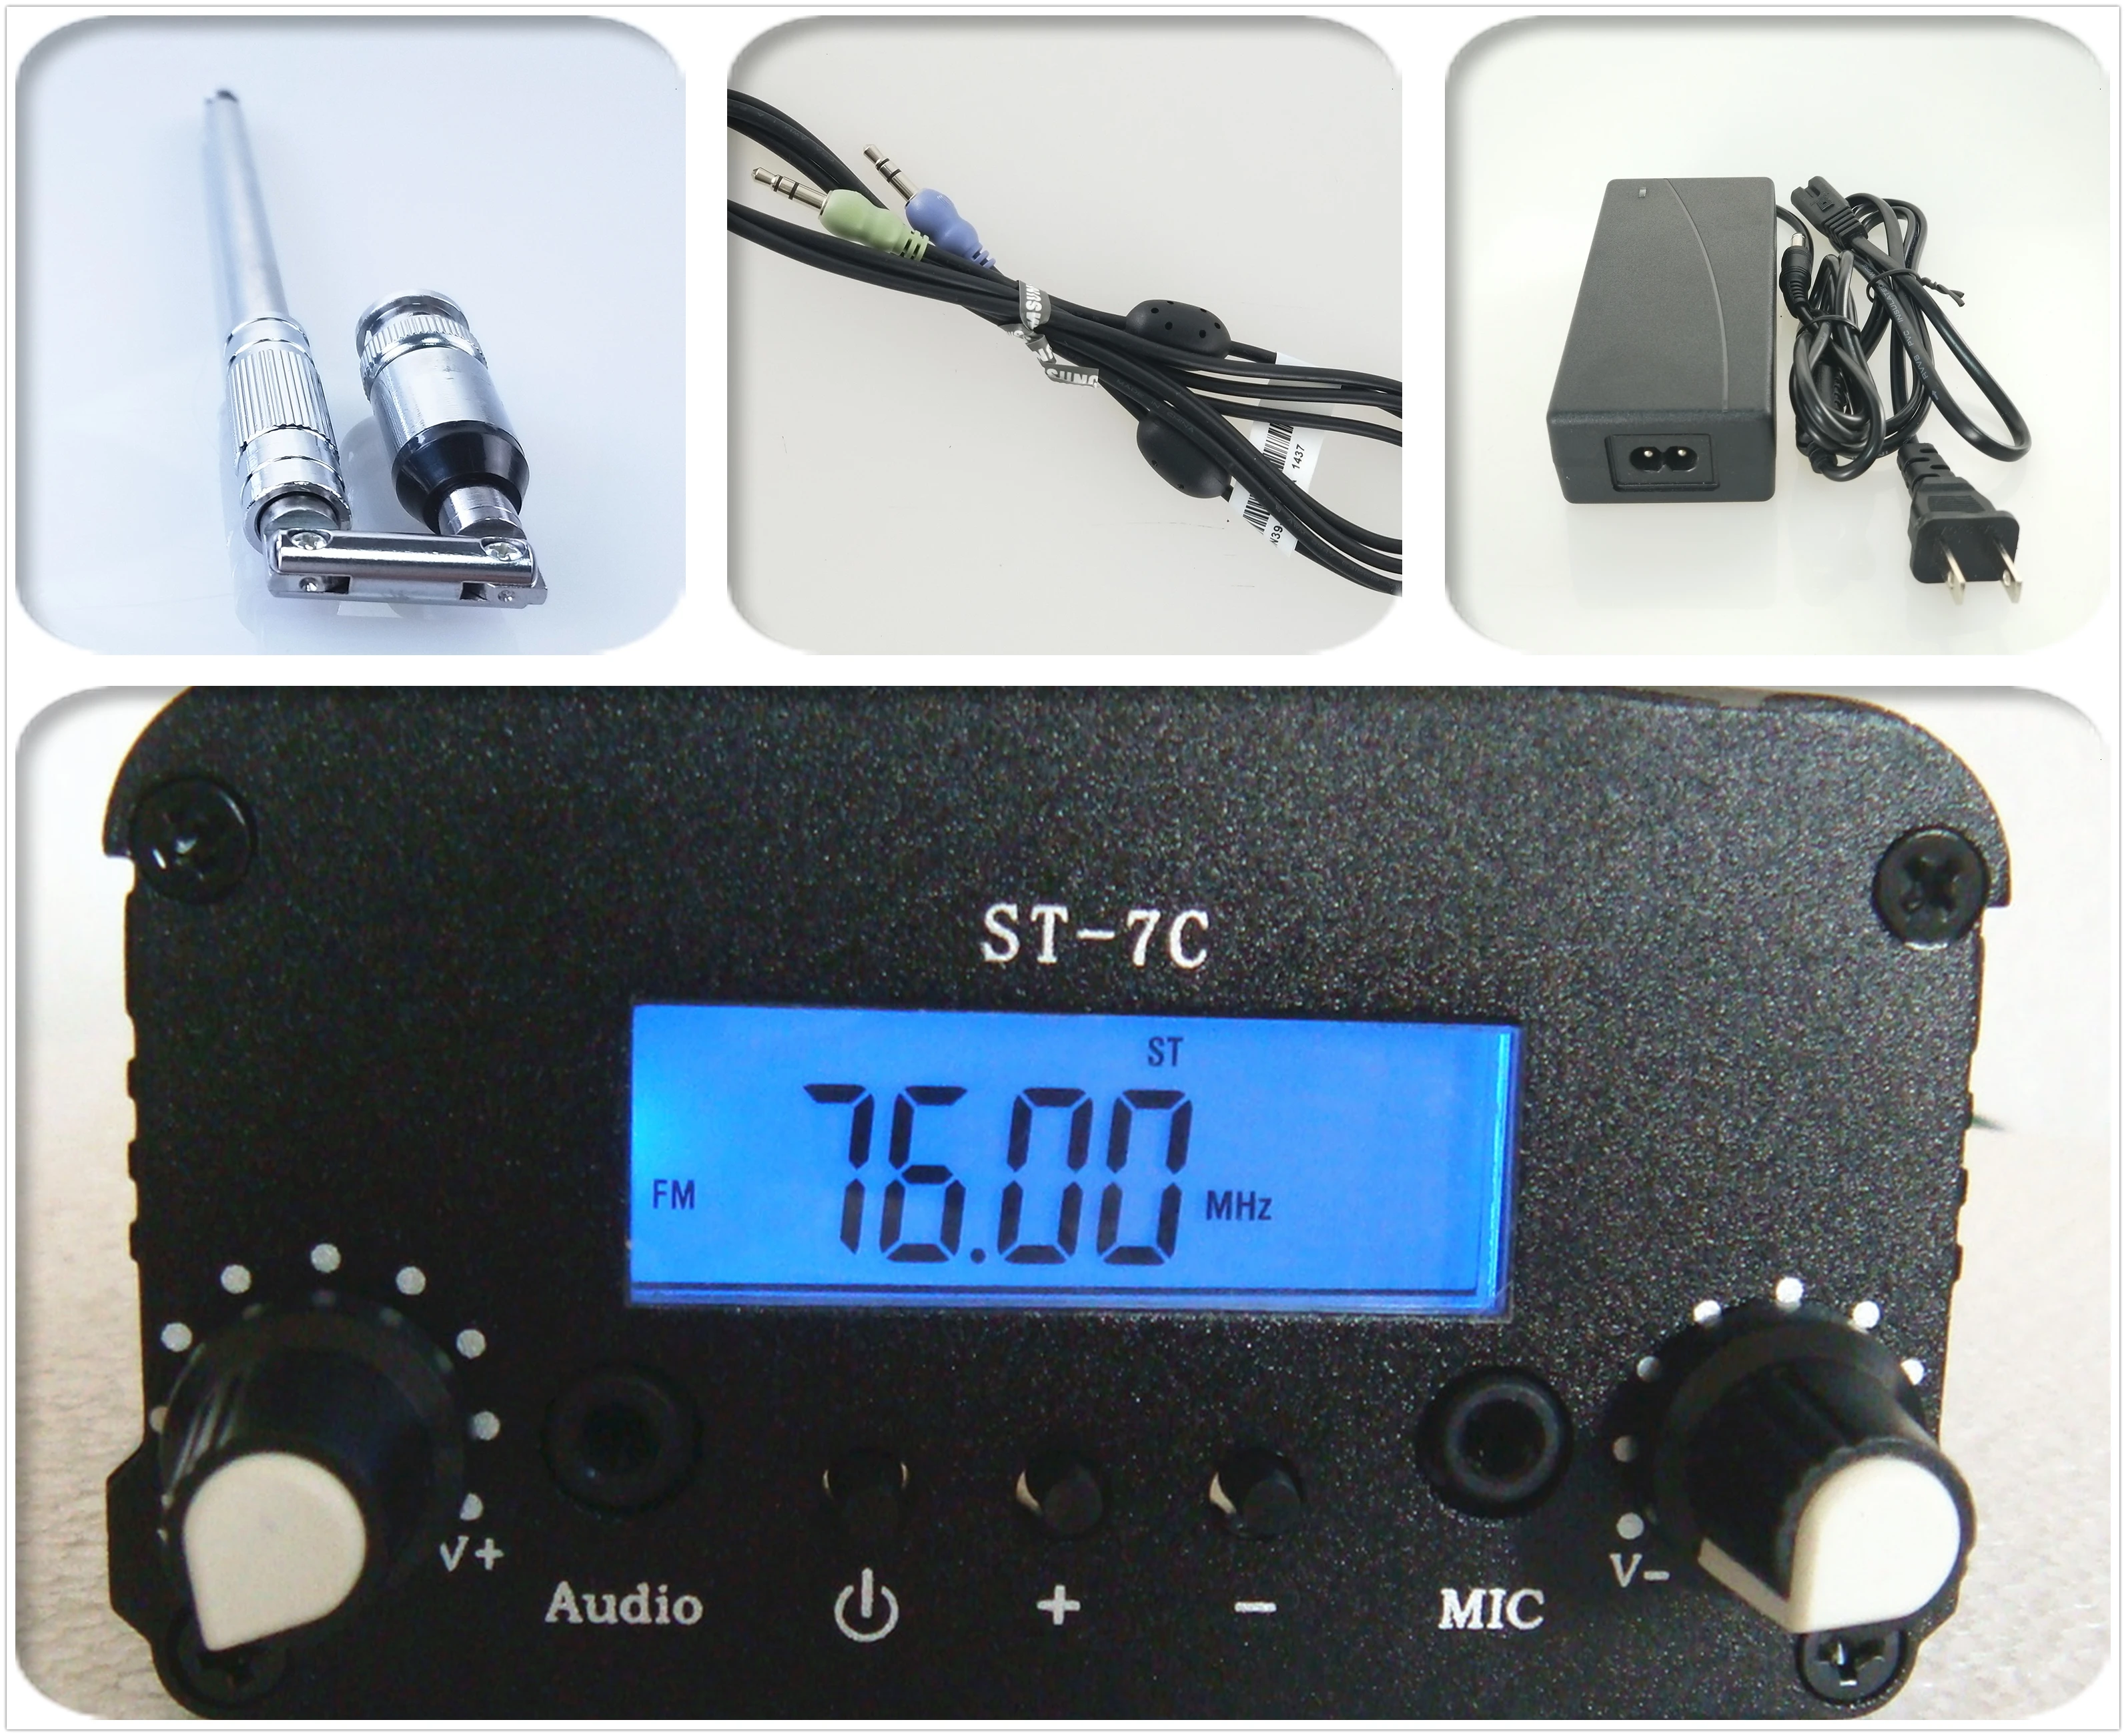 1 Вт/7 Вт стерео PLL вещания радио FM передатчик 76-108 МГц+ мощность+ антенна комплект